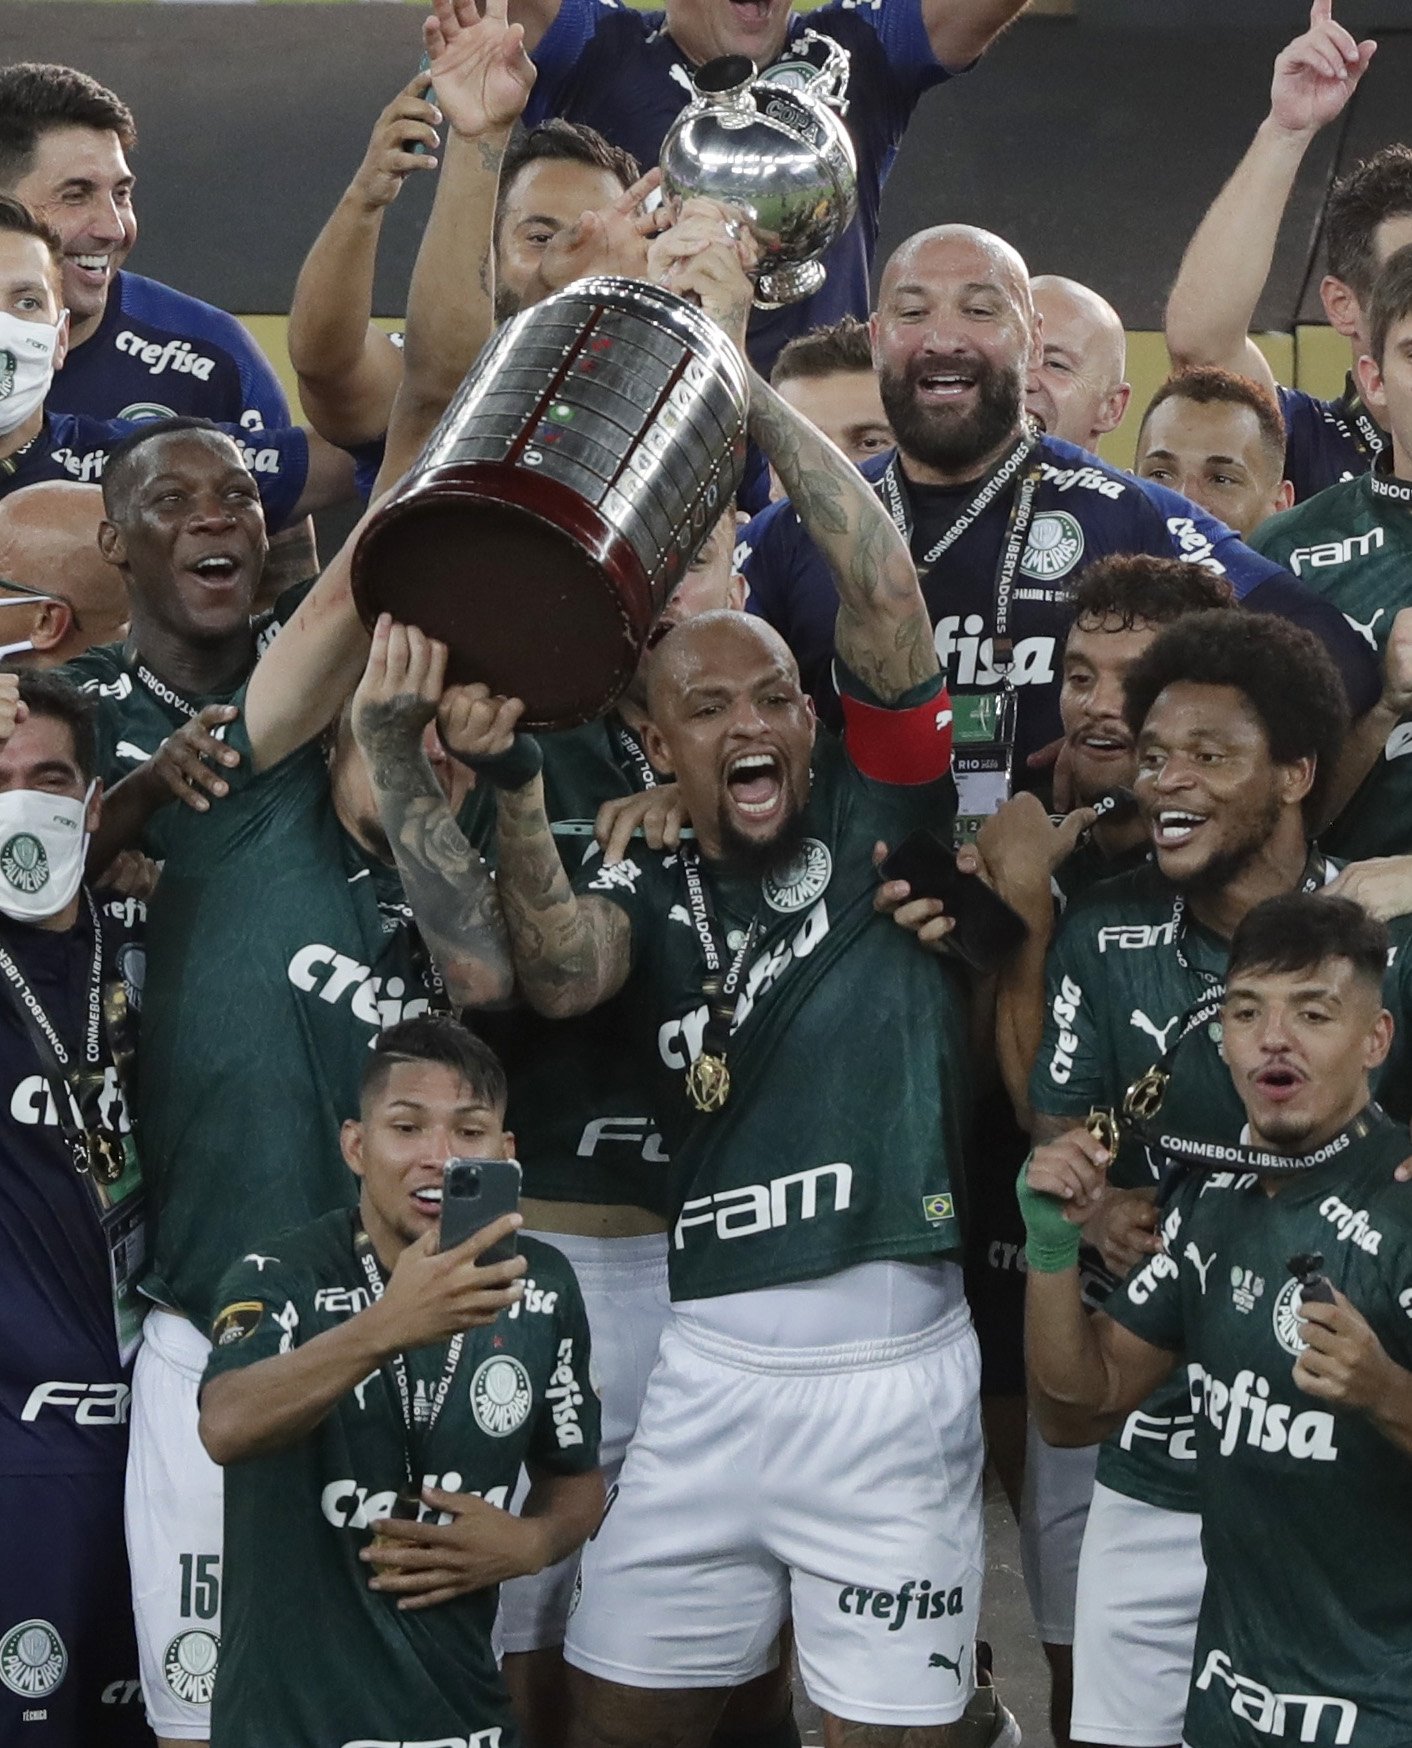 Palmeiras captain Felipe Melo lifts the trophy as he celebrates winning the Copa Libertadores with teammates, Estadio Maracana, Rio de Janeiro, Brazil, Jan. 30, 2021. (REUTERS Photo)